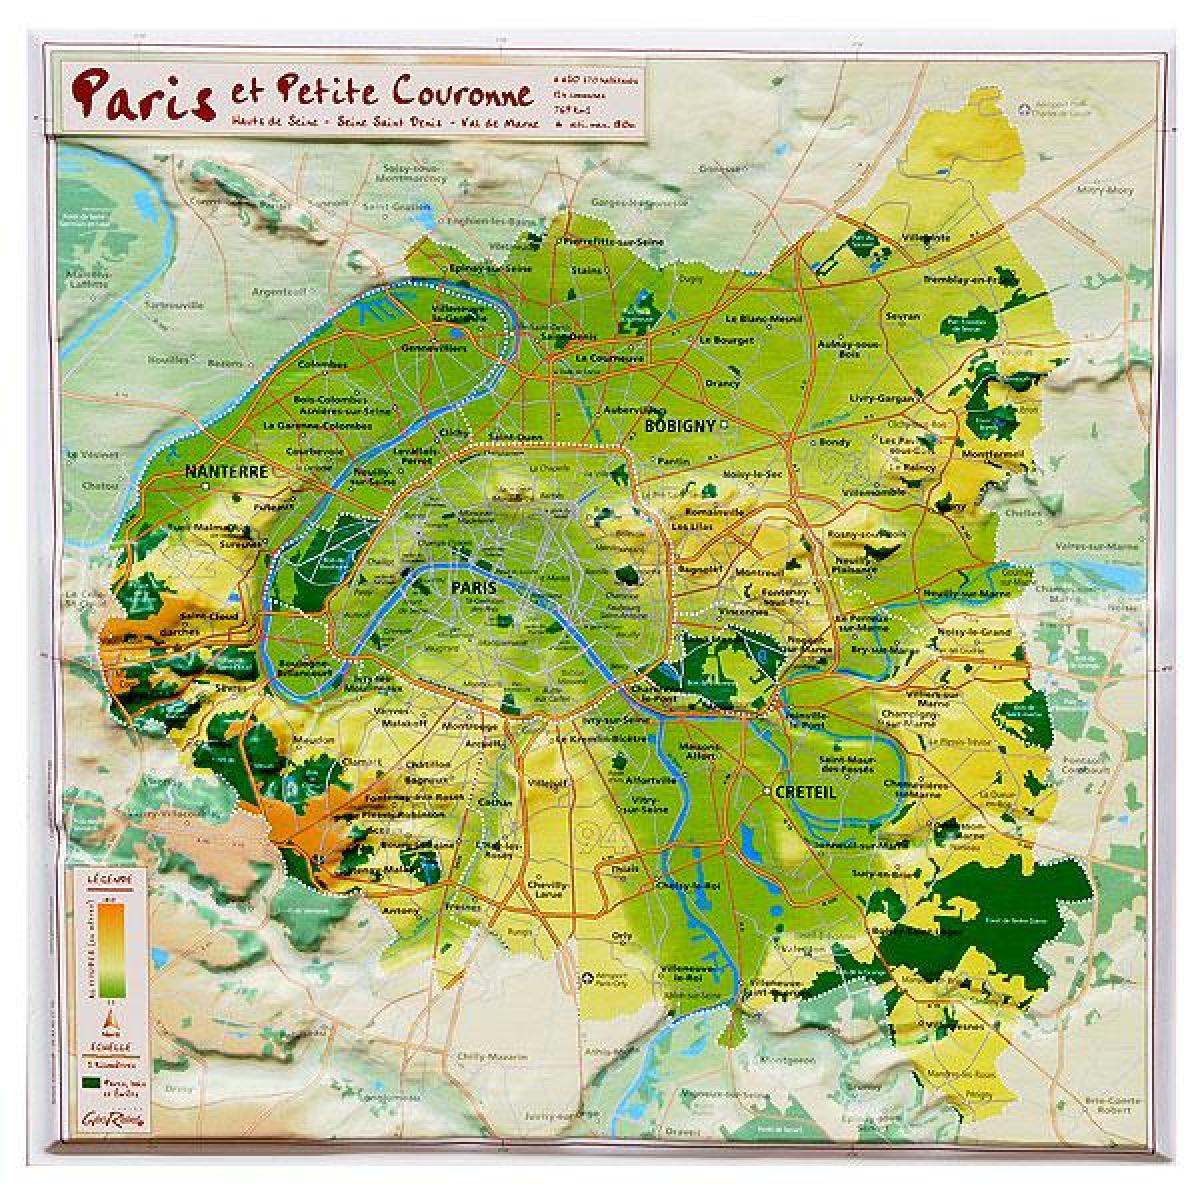 Harta lehtësim e Parisit